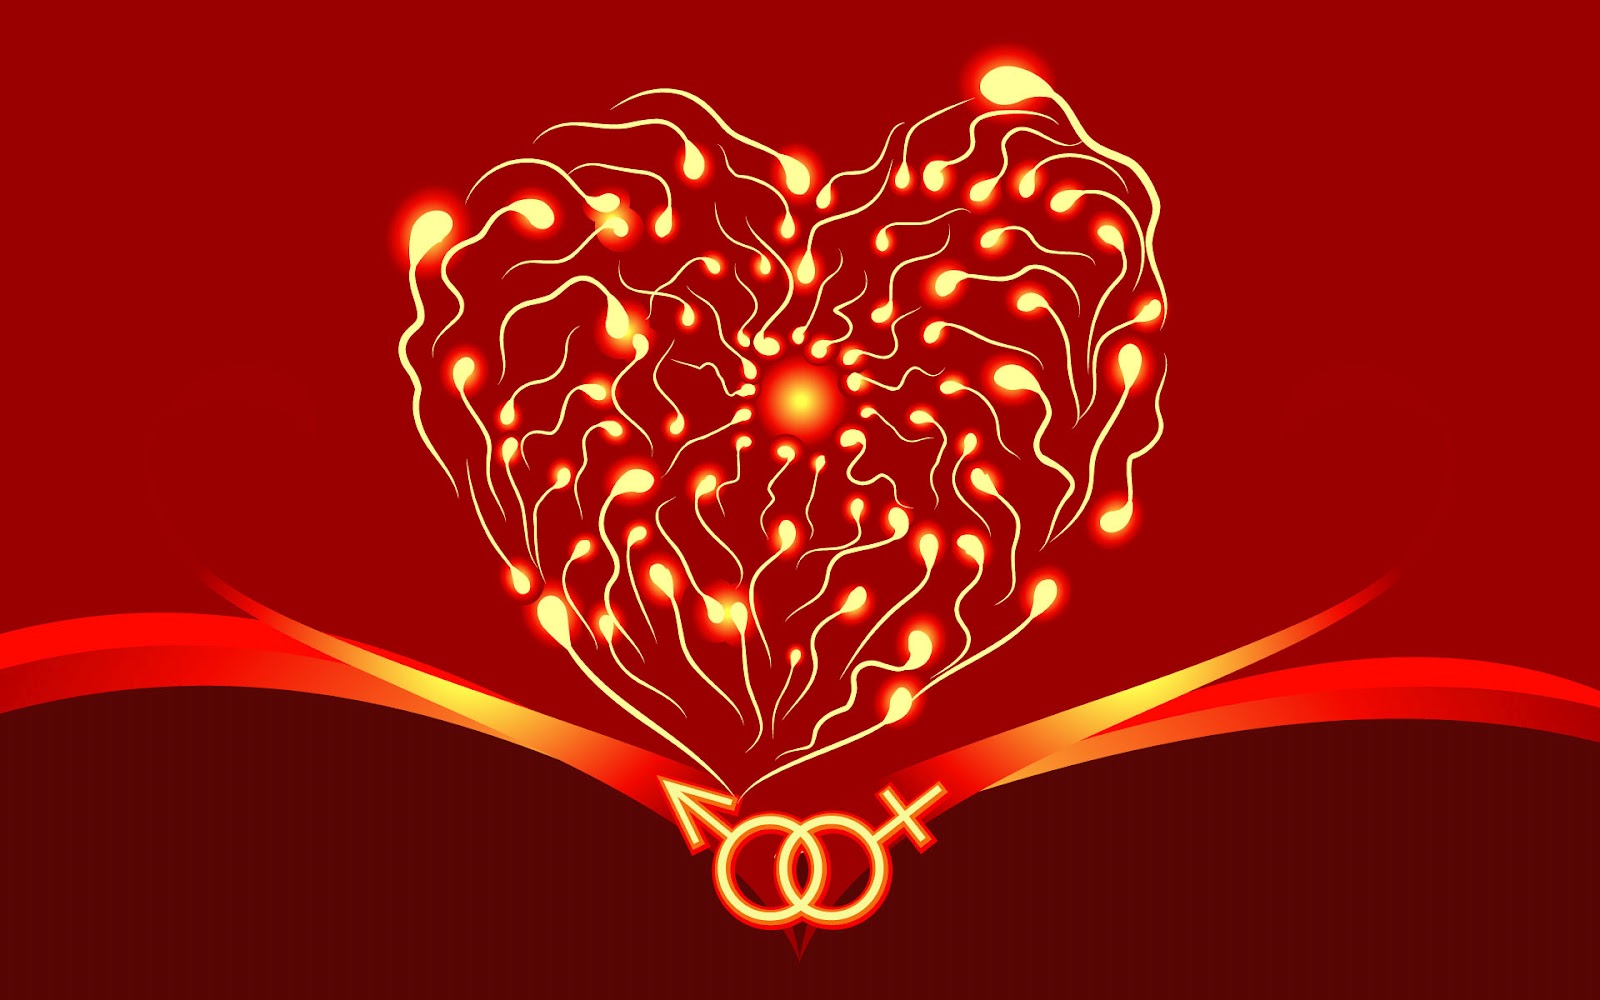 papel tapiz rood,corazón,rojo,amor,día de san valentín,cuerpo humano